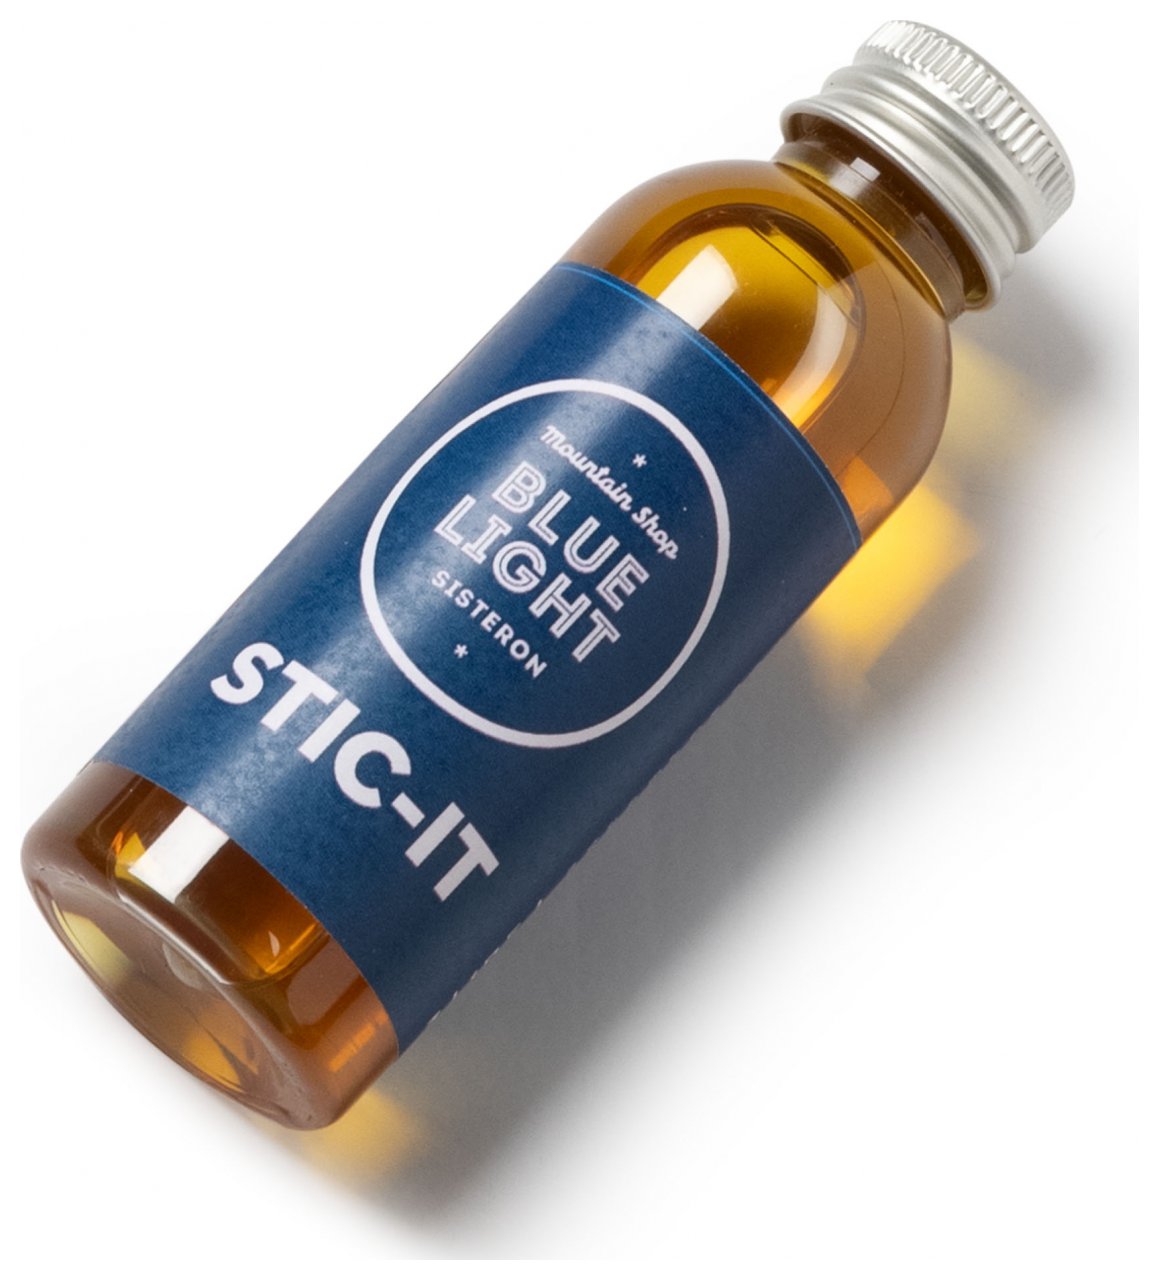 Stic-It (50ml), Liquid Chalk Alternative